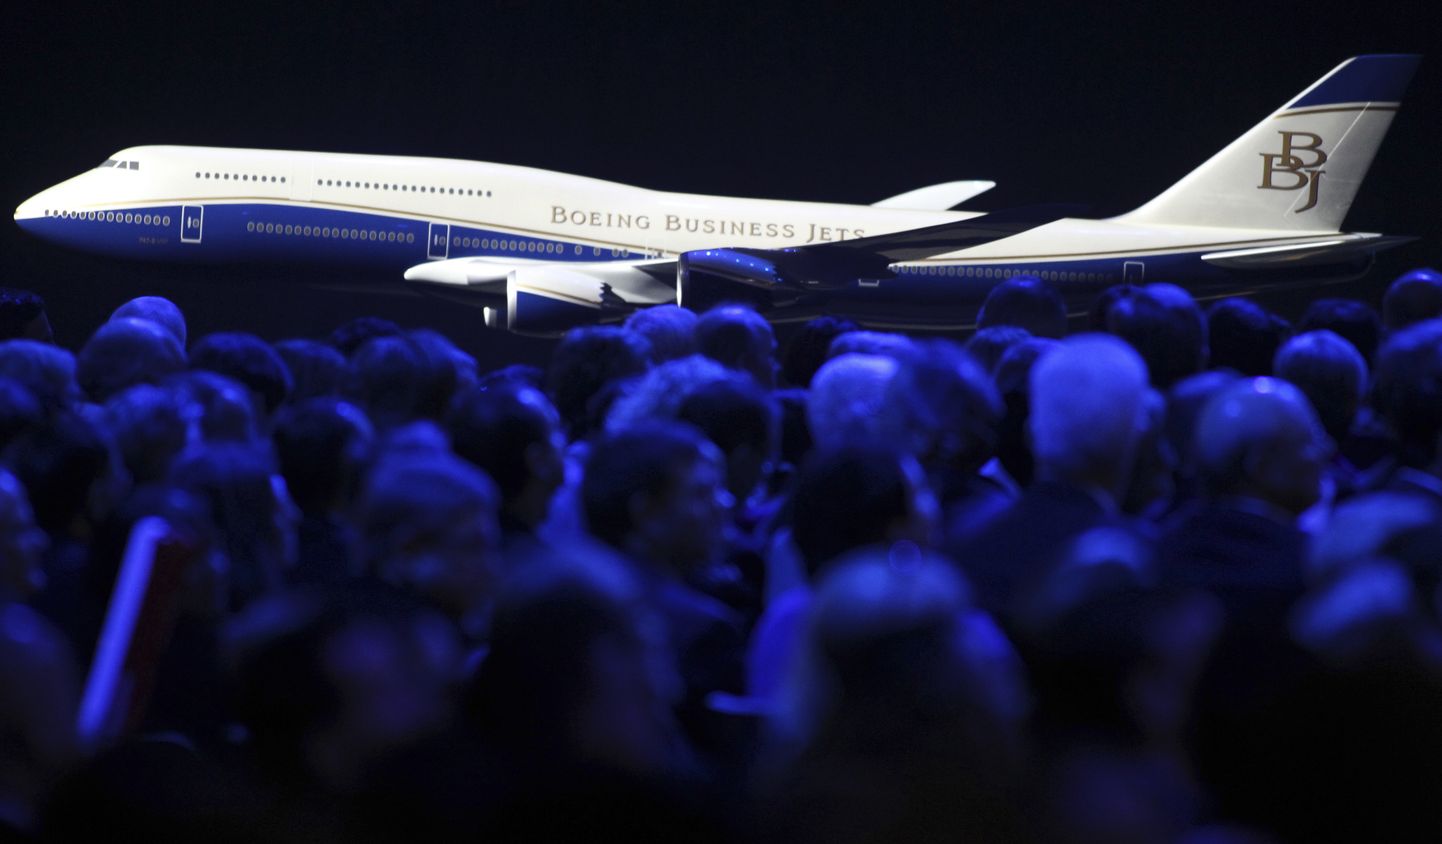 Pilt on illustreeriv. 2011. aastal tutvustati tuhandetele külalistele ja töötajatele Washingtonis Boeing Business Jet mudelit.